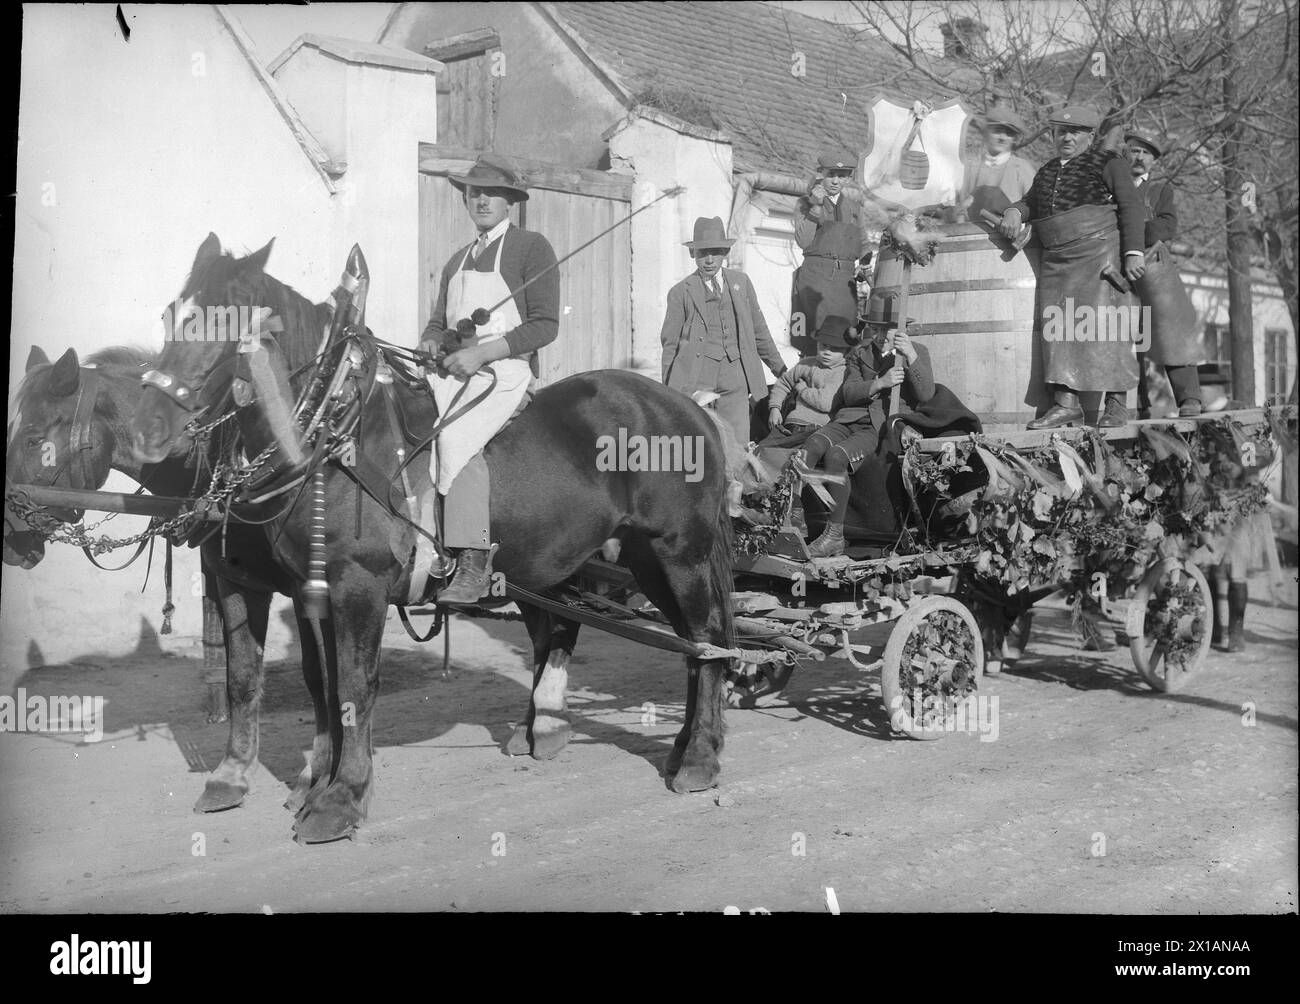 Veicolo Cooper al festival della vendemmia 1928, cavallo e carrozza con uomini abituali e una grande botte al festival di Poysdorf, 1928 - 19280101 PD3193 - Rechteinfo: Diritti gestiti (RM) Foto Stock